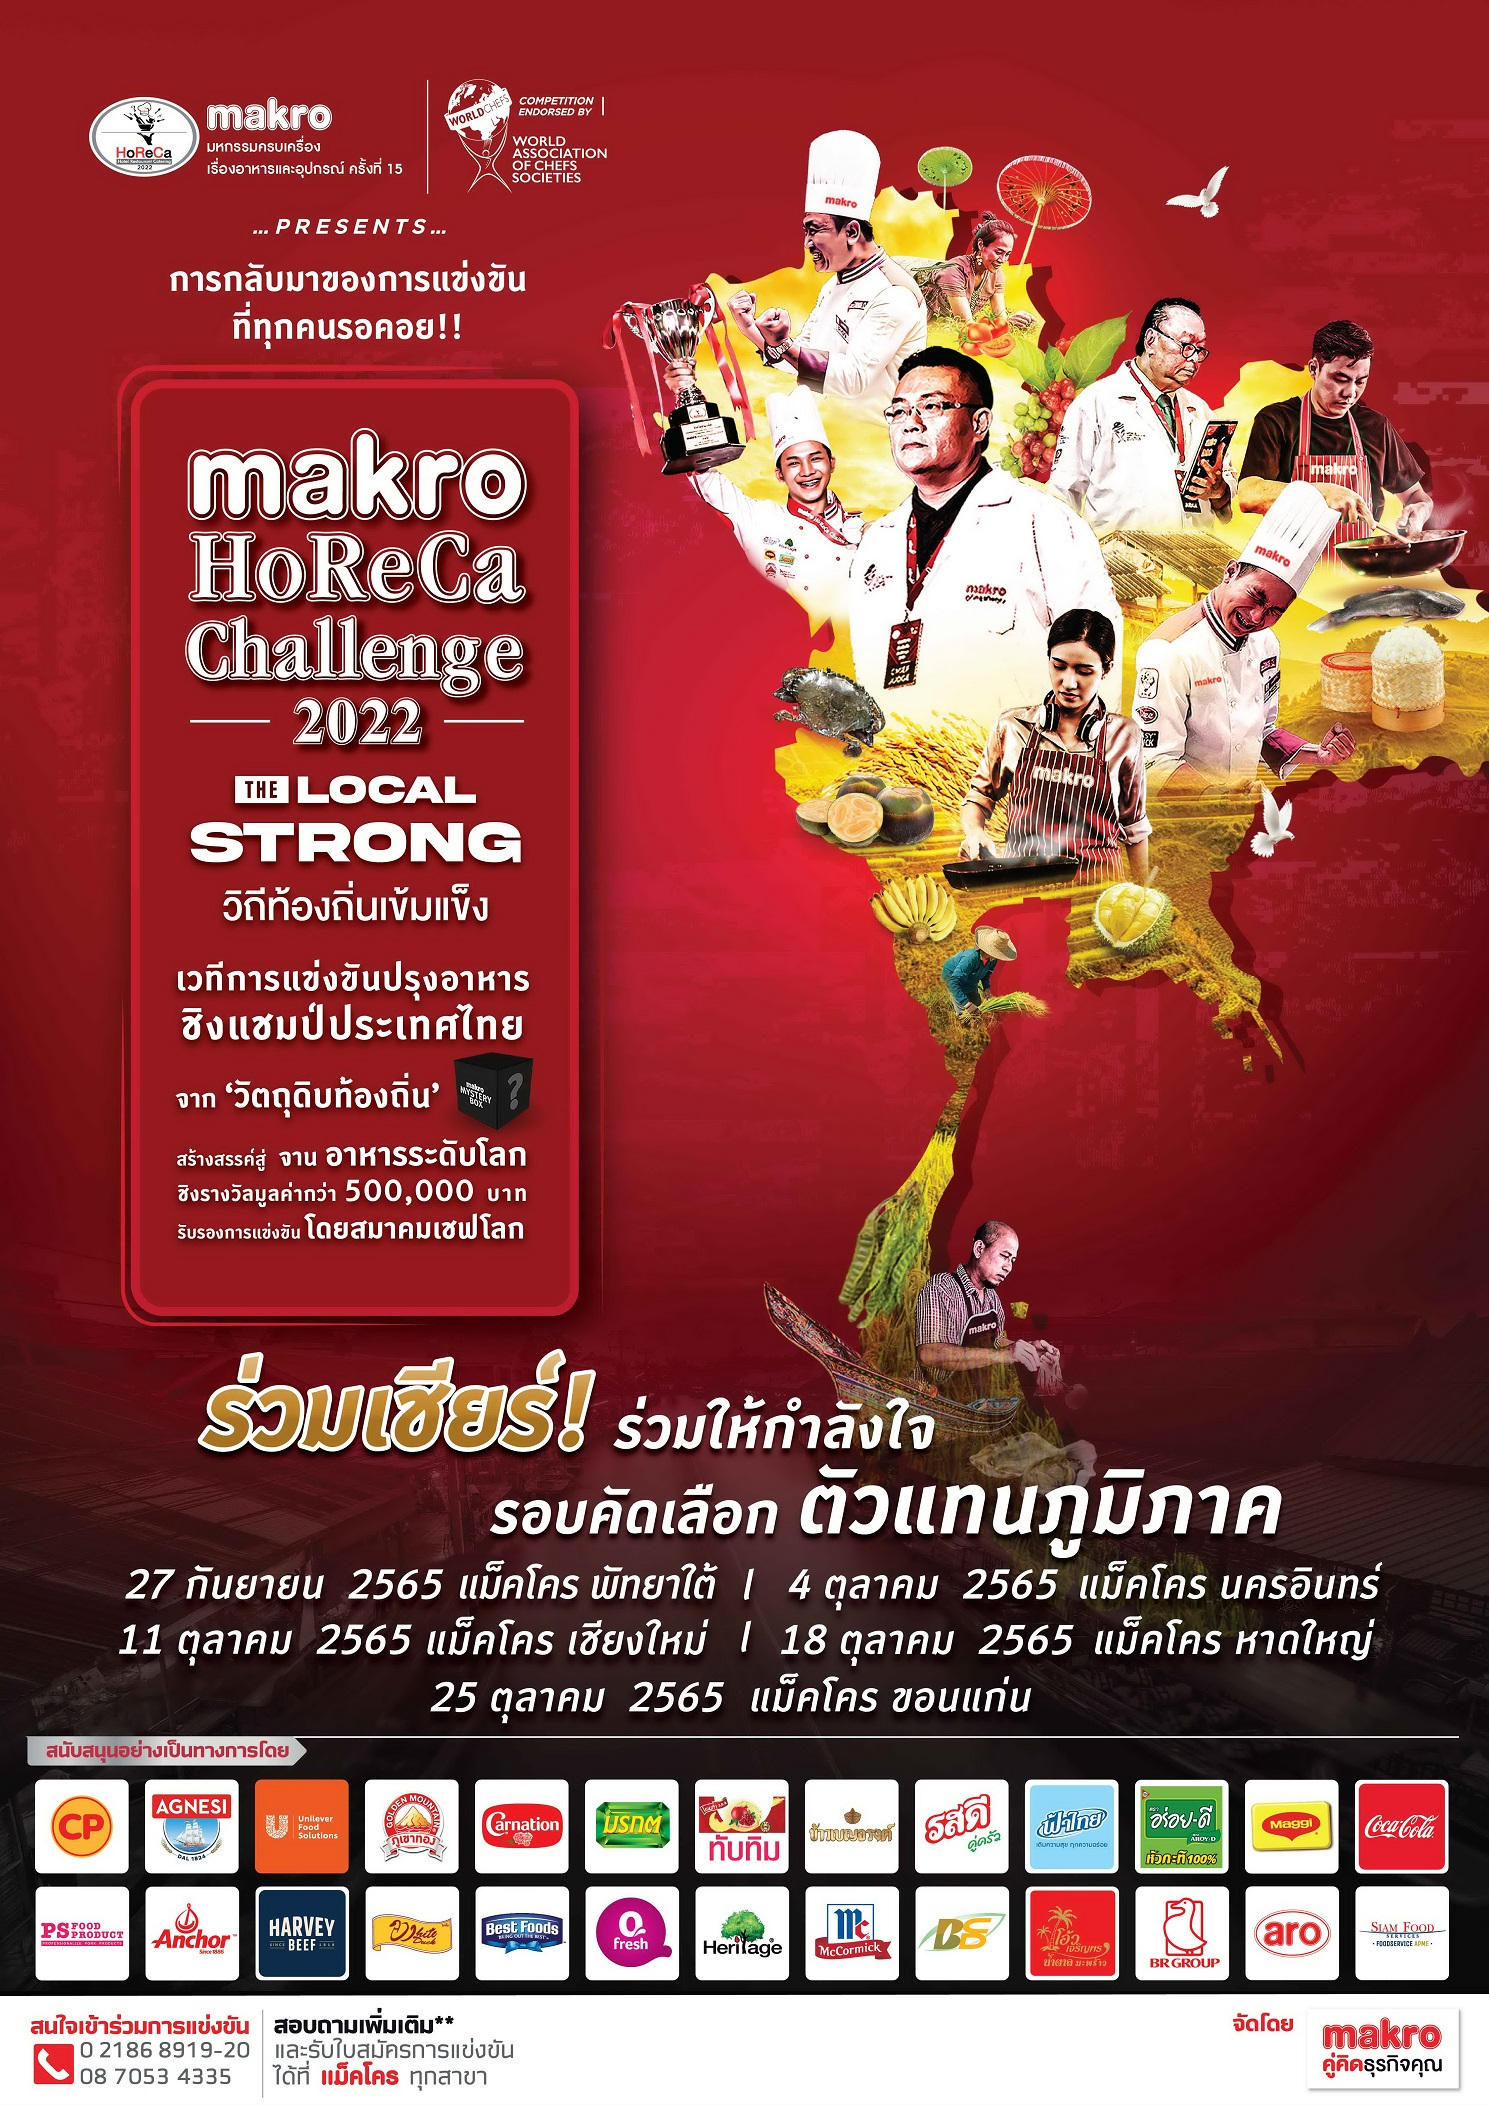 กลับมาอีกครั้ง กับการแข่งขันปรุงอาหารชิงแชมป์ประเทศไทย บนเวที “Makro HoReCa Challenge 2022 ครั้งที่ 15”